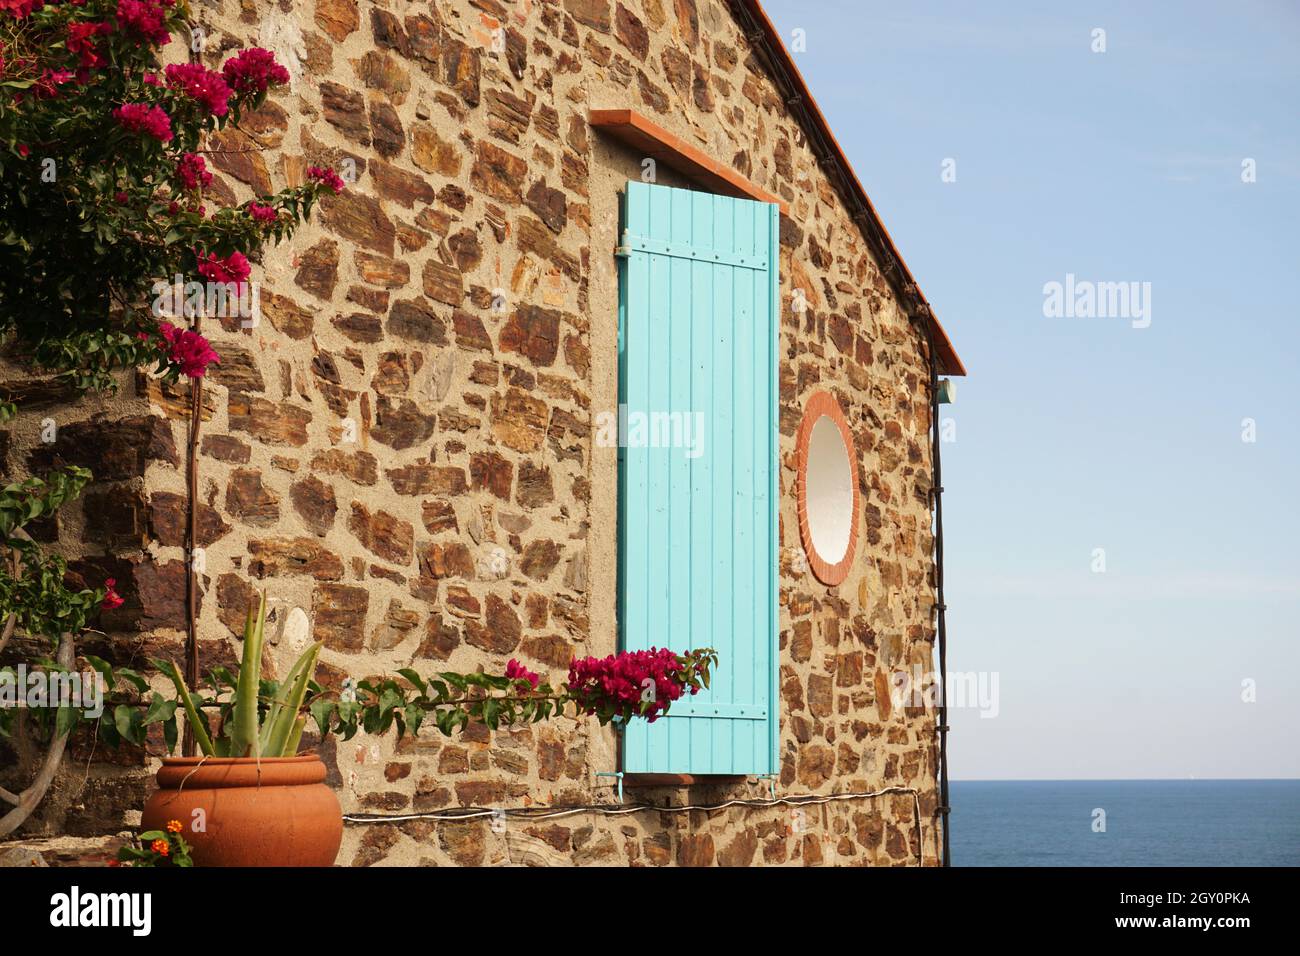 Parete a timpano di casa in pietra caratterizzata da persiane in legno color turchese e fiori rossi con mare Mediterraneo visibile. Collioure, Francia Foto Stock